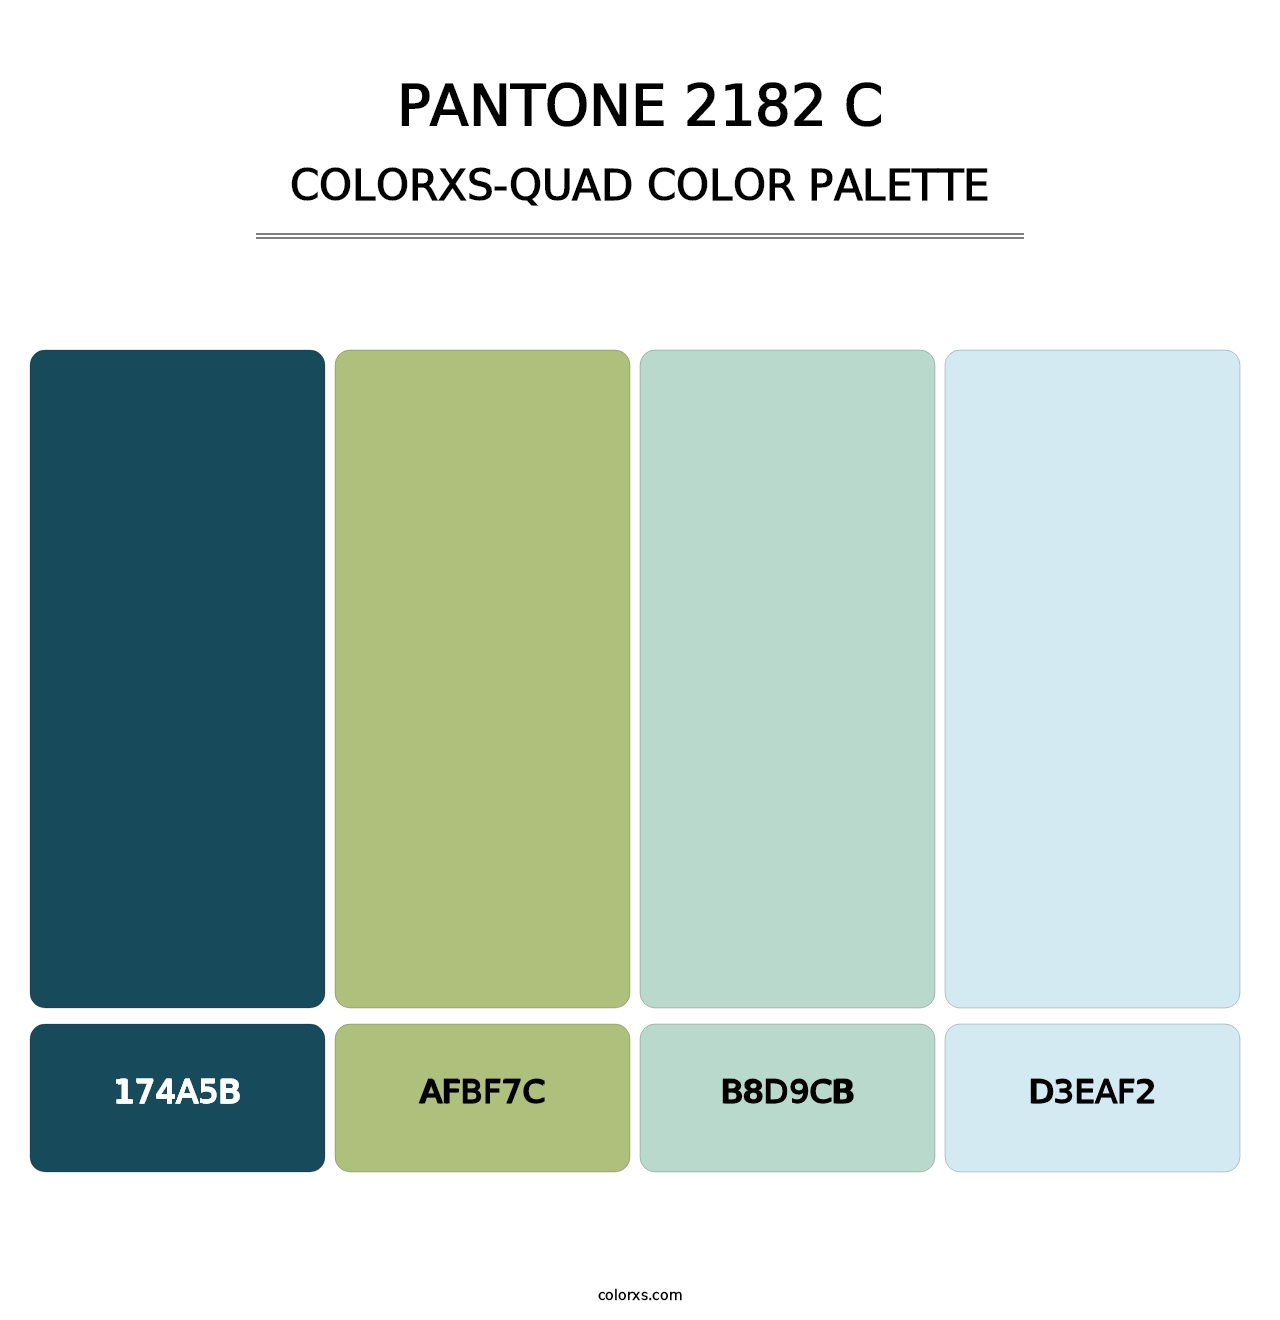 PANTONE 2182 C - Colorxs Quad Palette